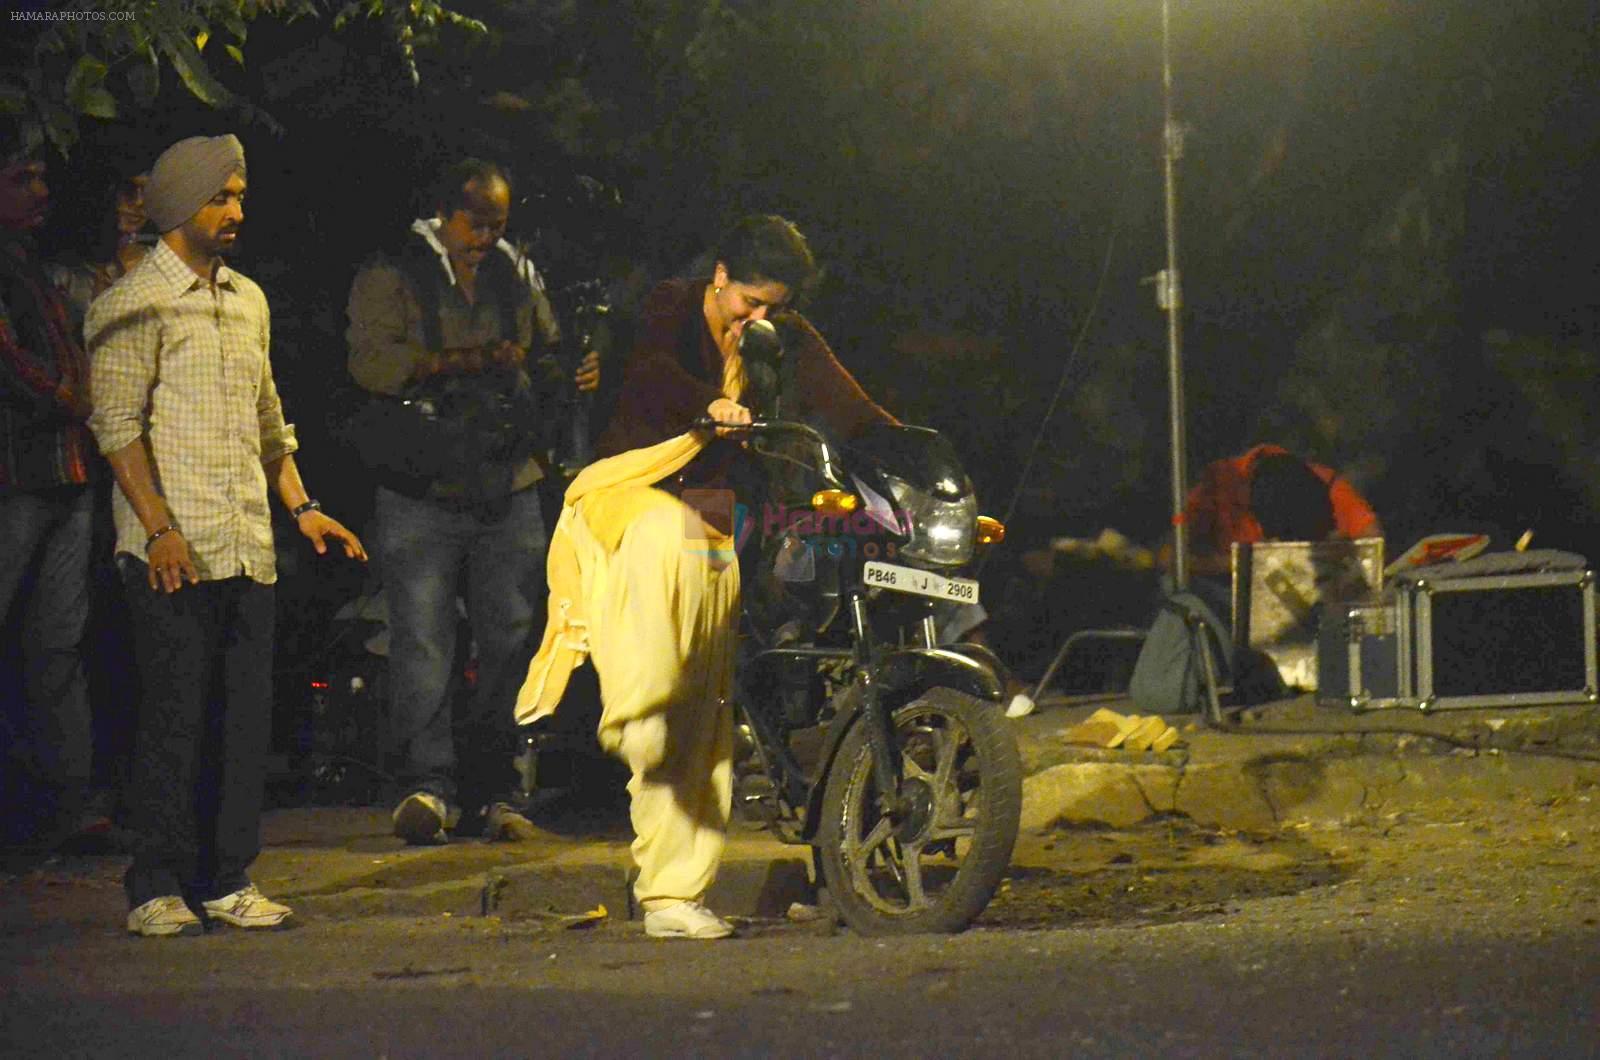 Kareena Kapoor on location of Udta Panjabi on 24th Oct 2015